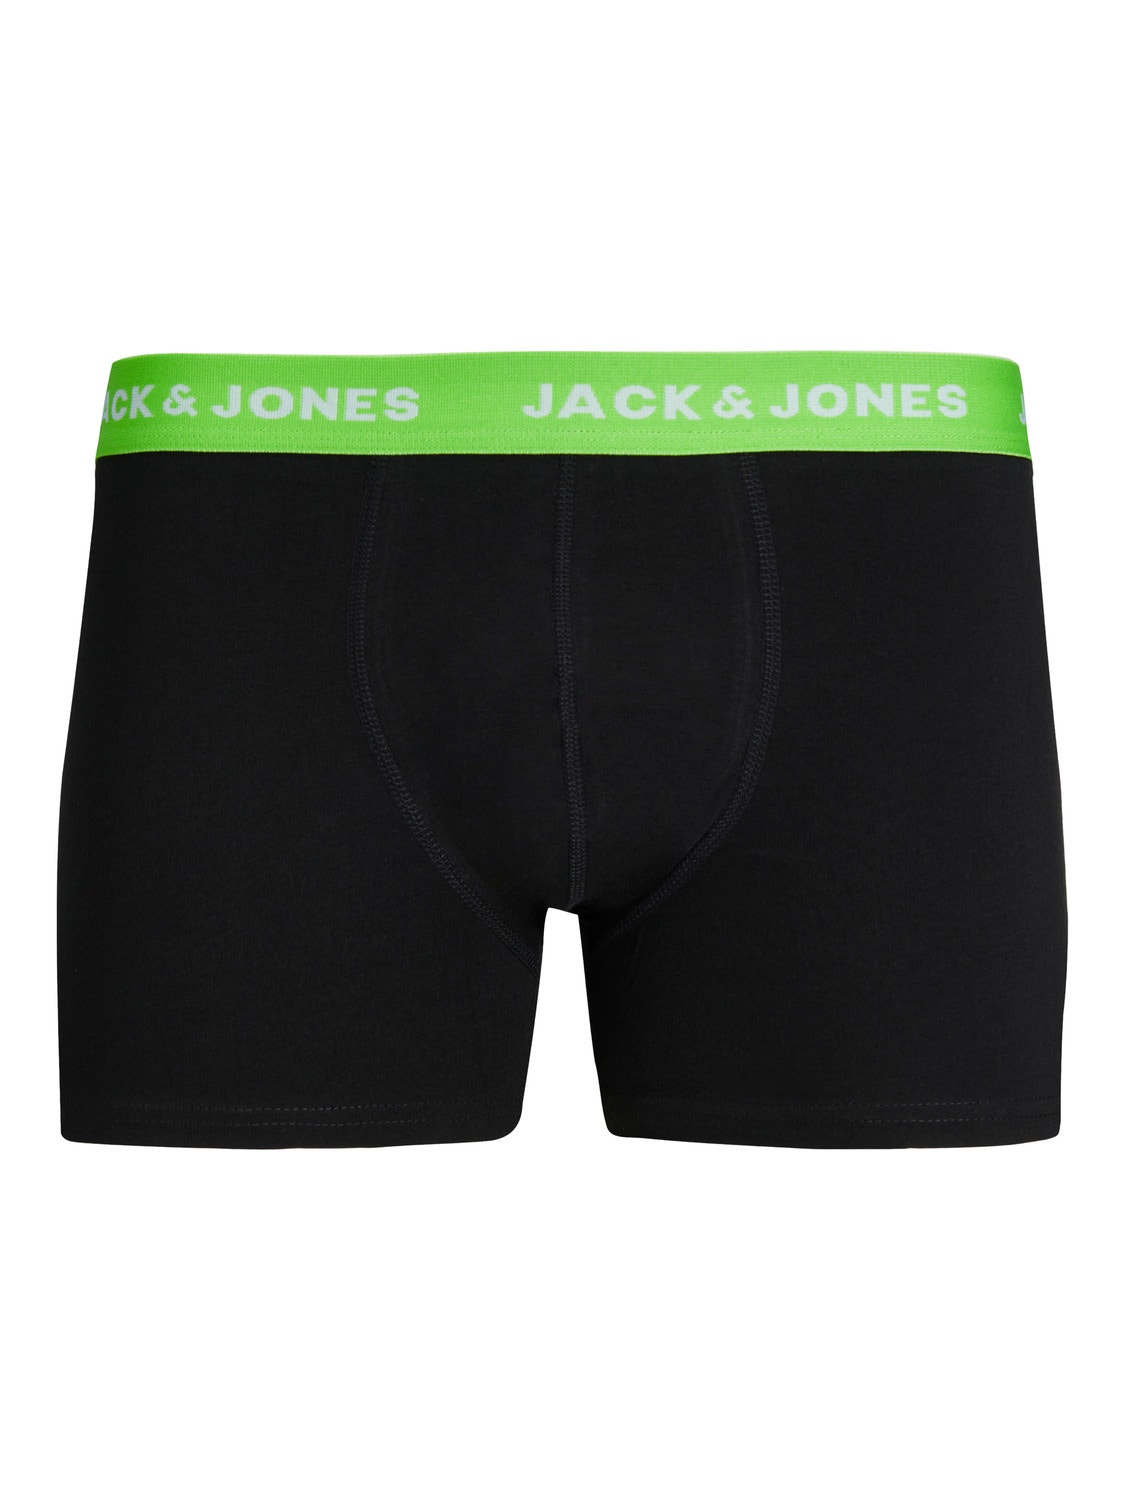 Jack & Jones 5-pakuotės Trumpikės -Black - 12246379